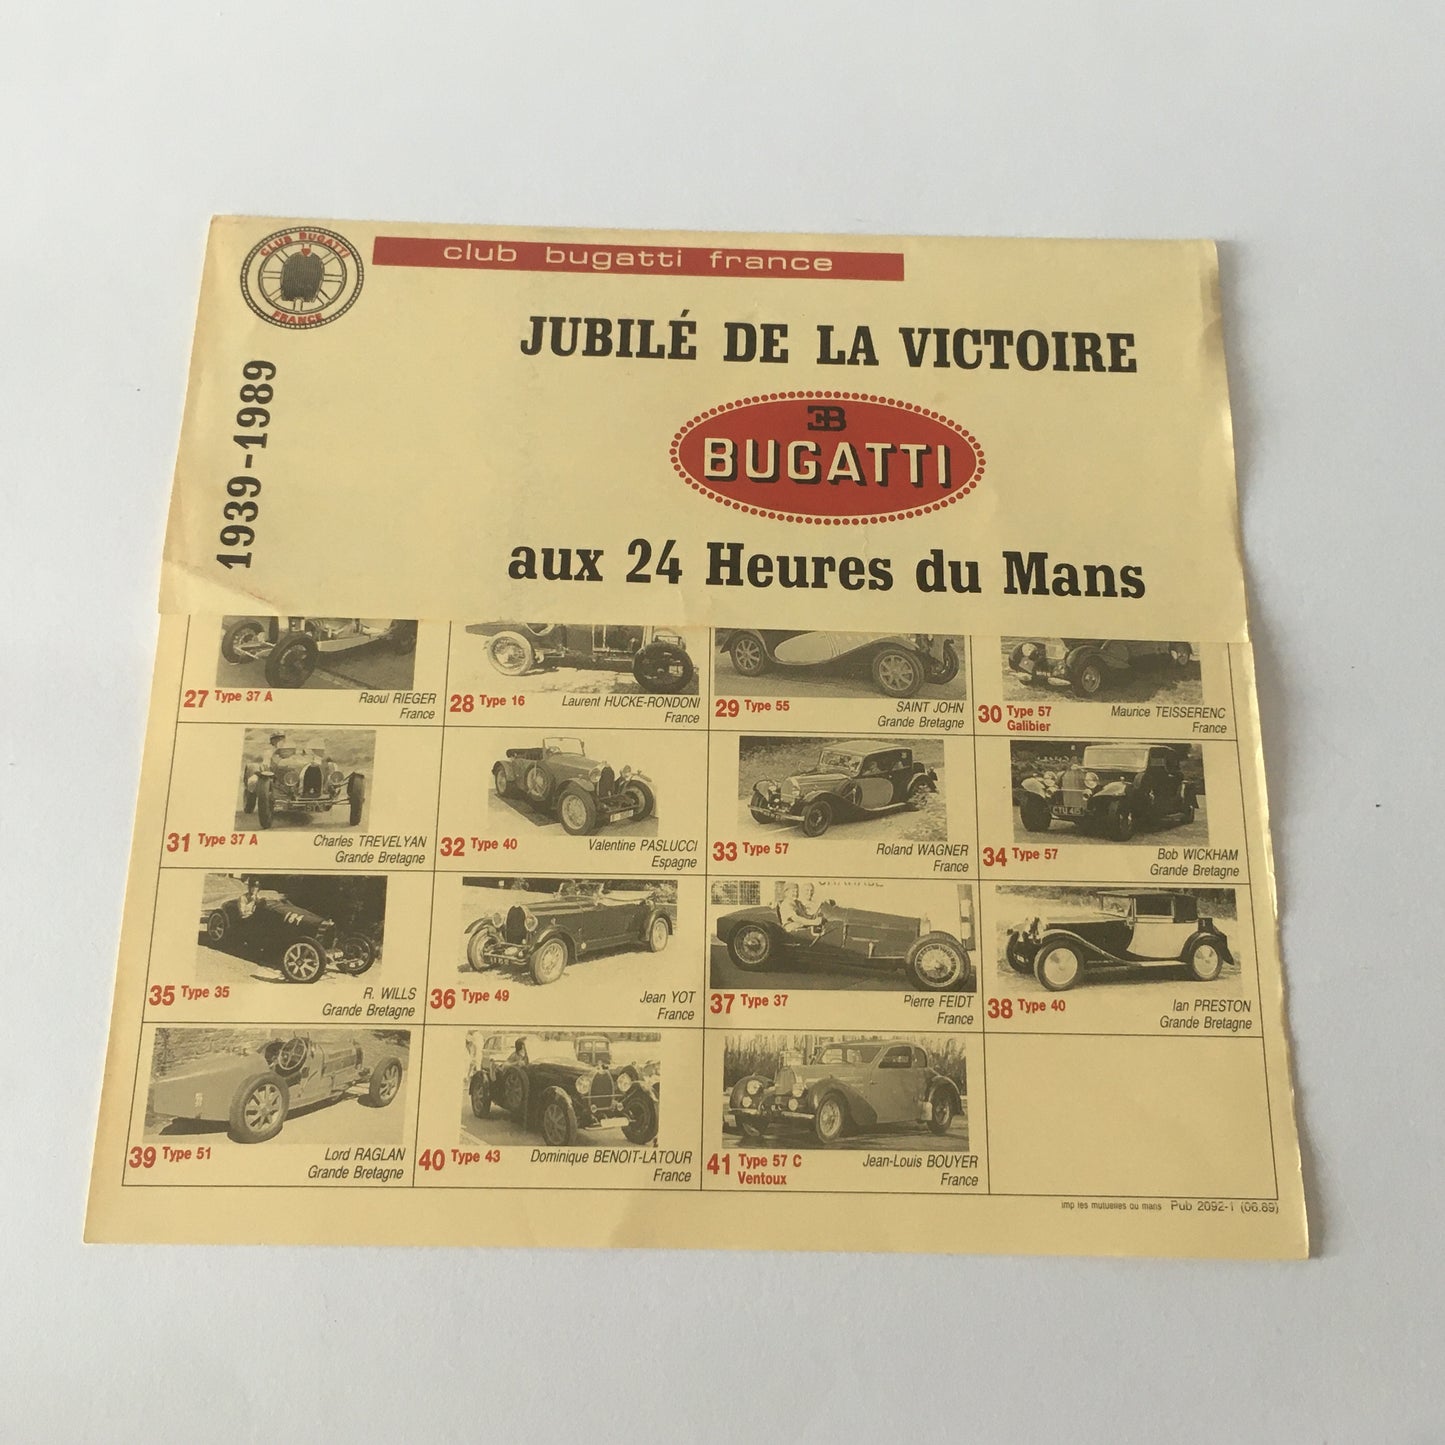 Bugatti, Brochure Giubileo della Vittoria Bugatti alla 24 Ore di Le Mans 1939 - 1989 Edizione Limitata